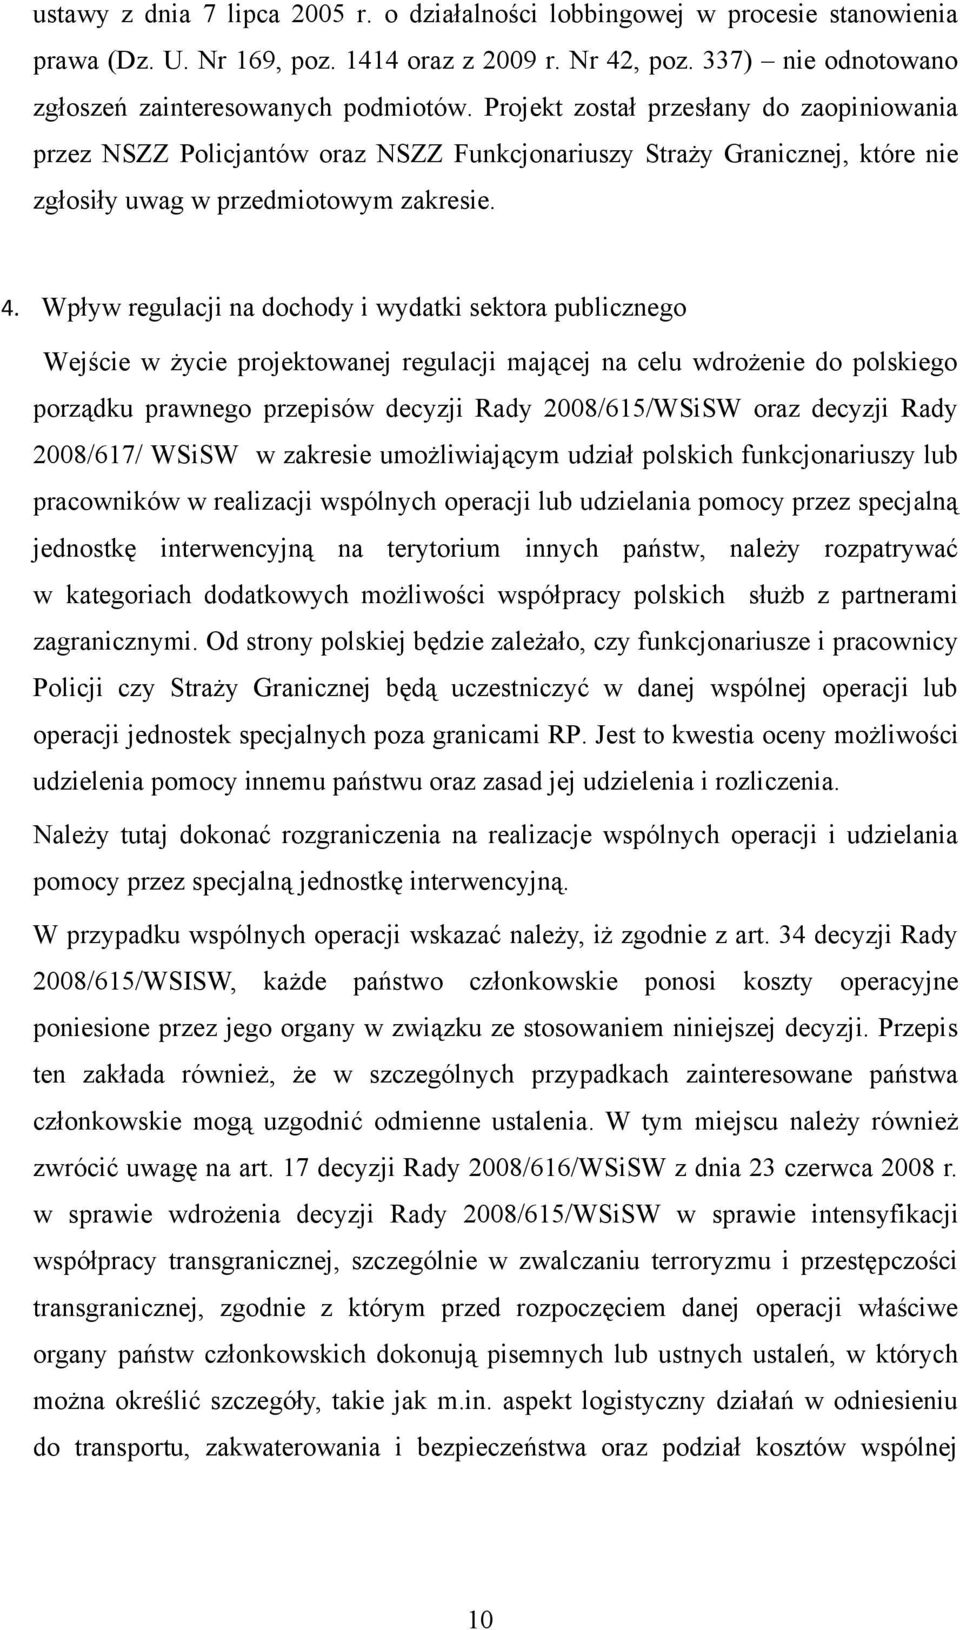 Wpływ regulacji na dochody i wydatki sektora publicznego Wejście w życie projektowanej regulacji mającej na celu wdrożenie do polskiego porządku prawnego przepisów decyzji Rady 2008/615/WSiSW oraz